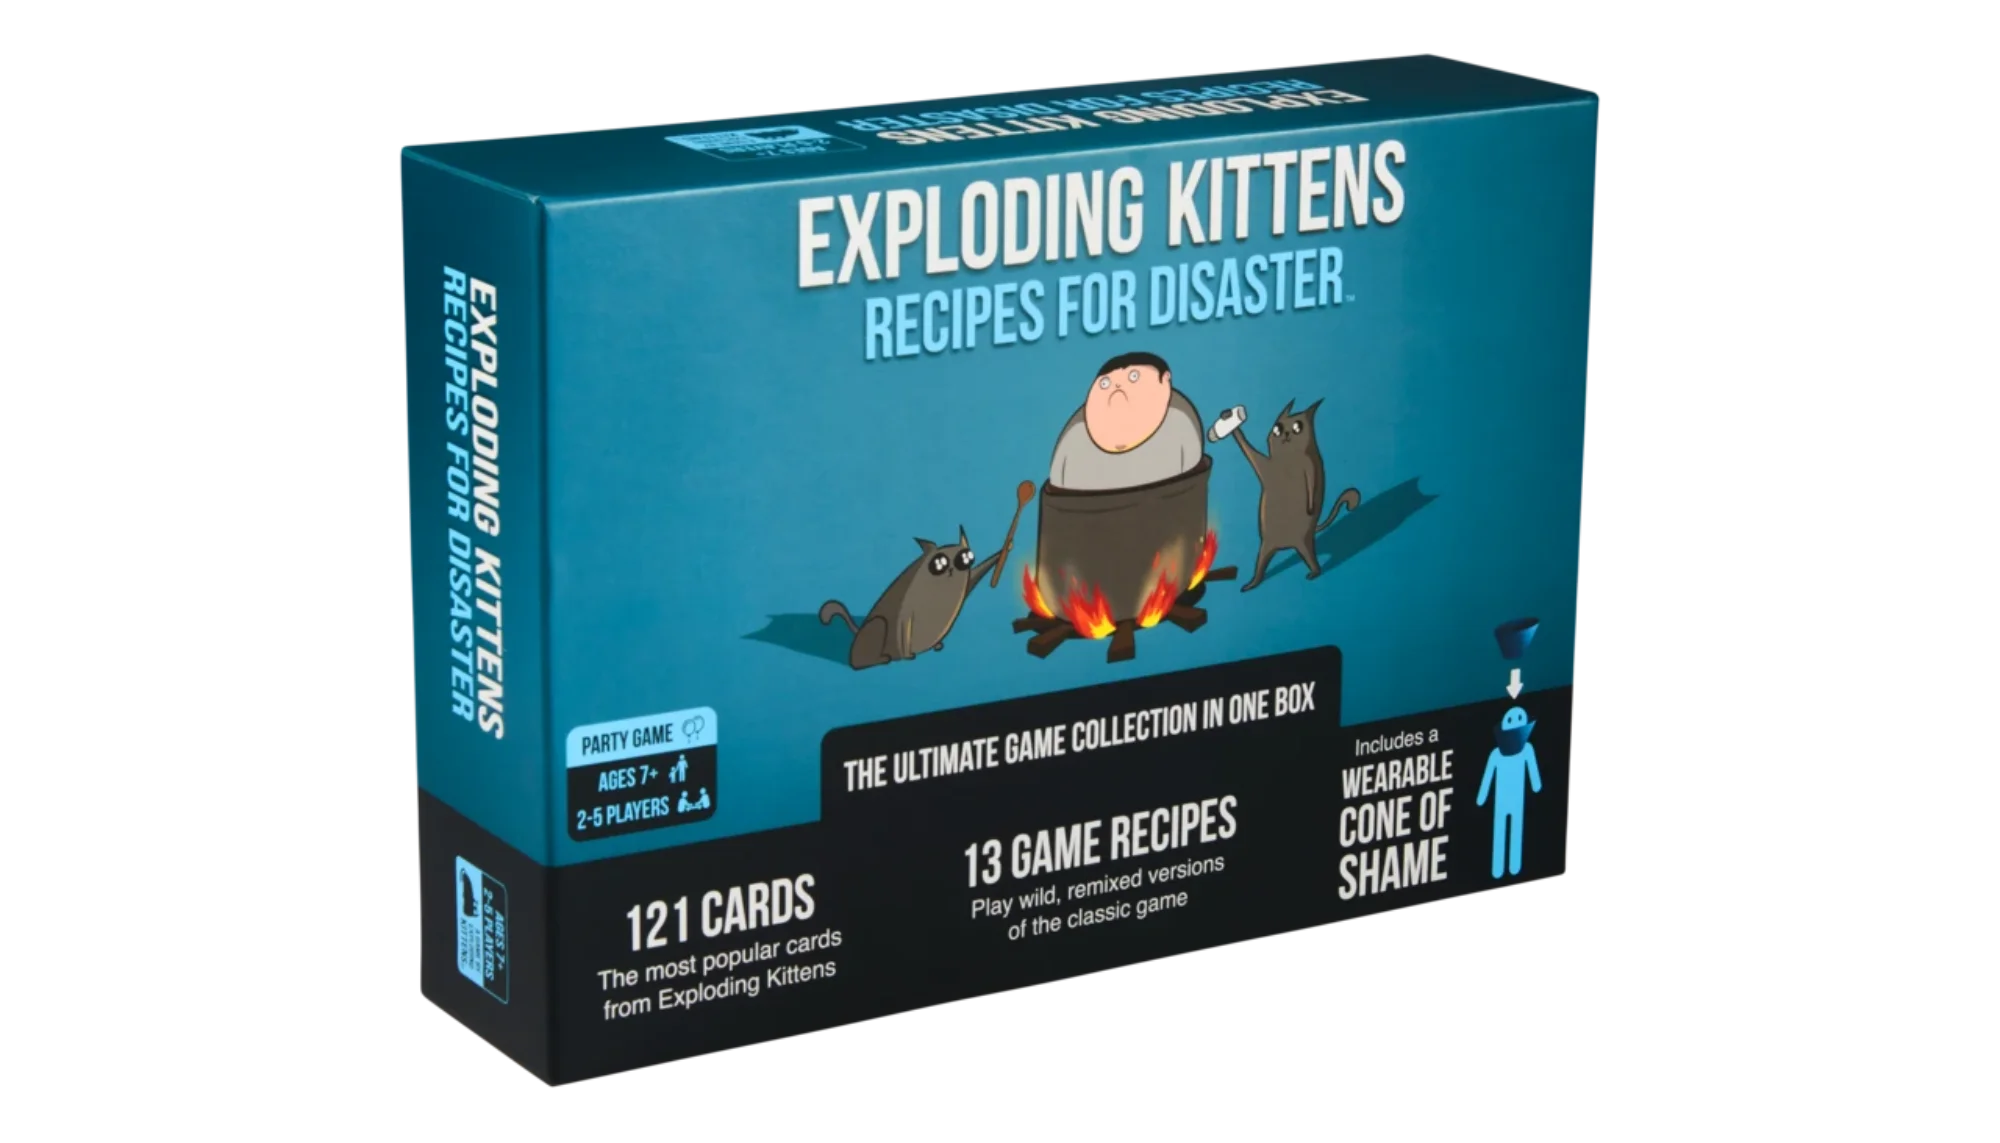 Caja de Exploding Kittens Recipes for Disaster